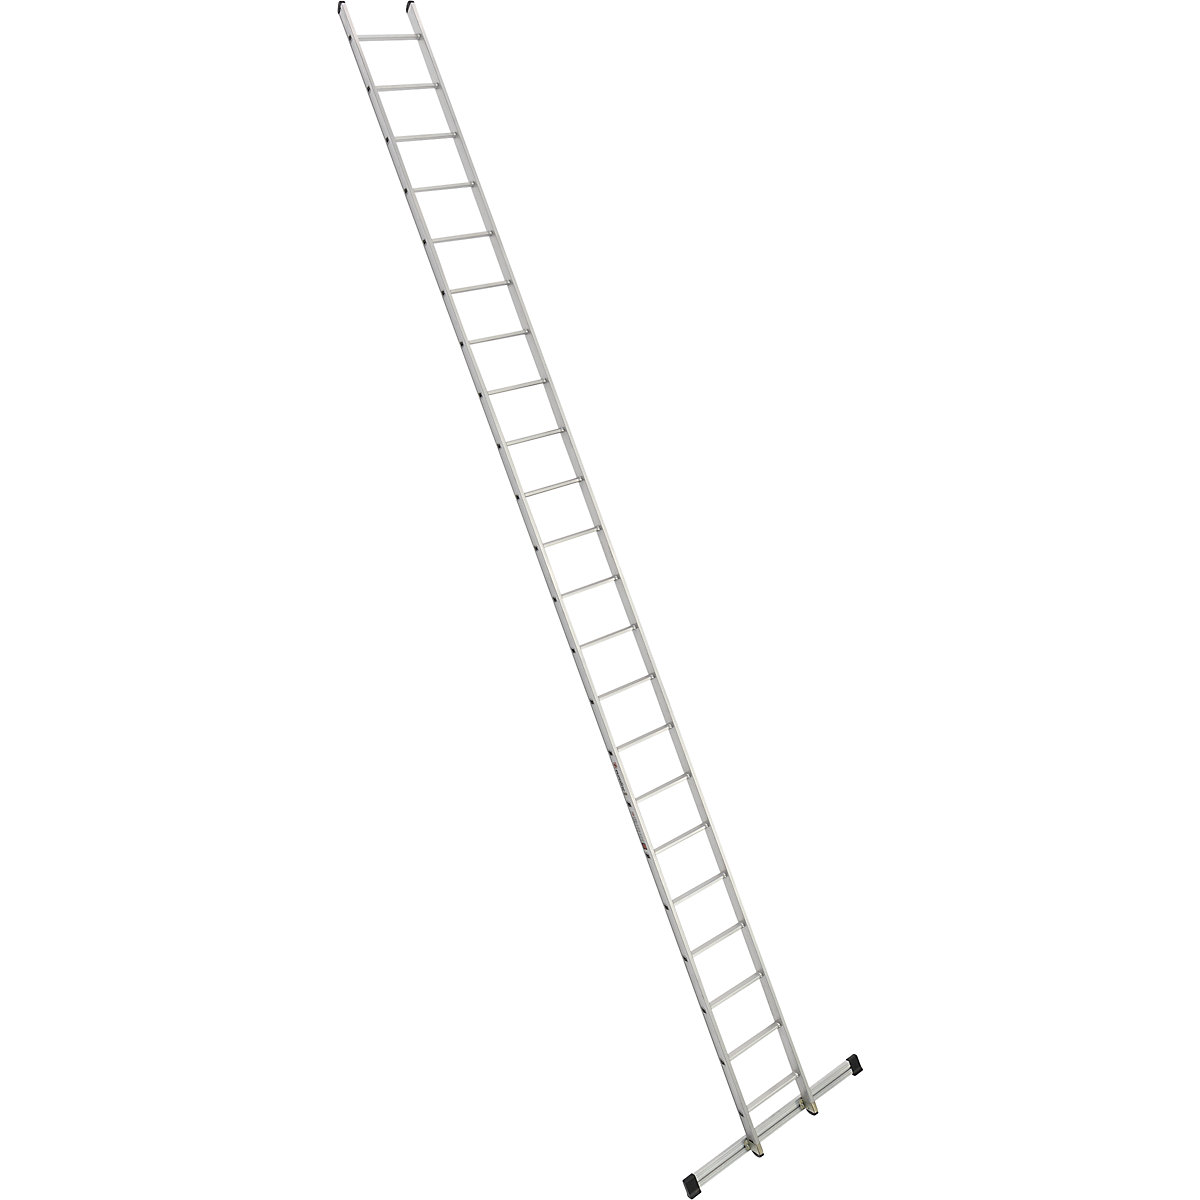 Escada de encosto – euroline, largura 410 mm, 22 degraus com travessa-1